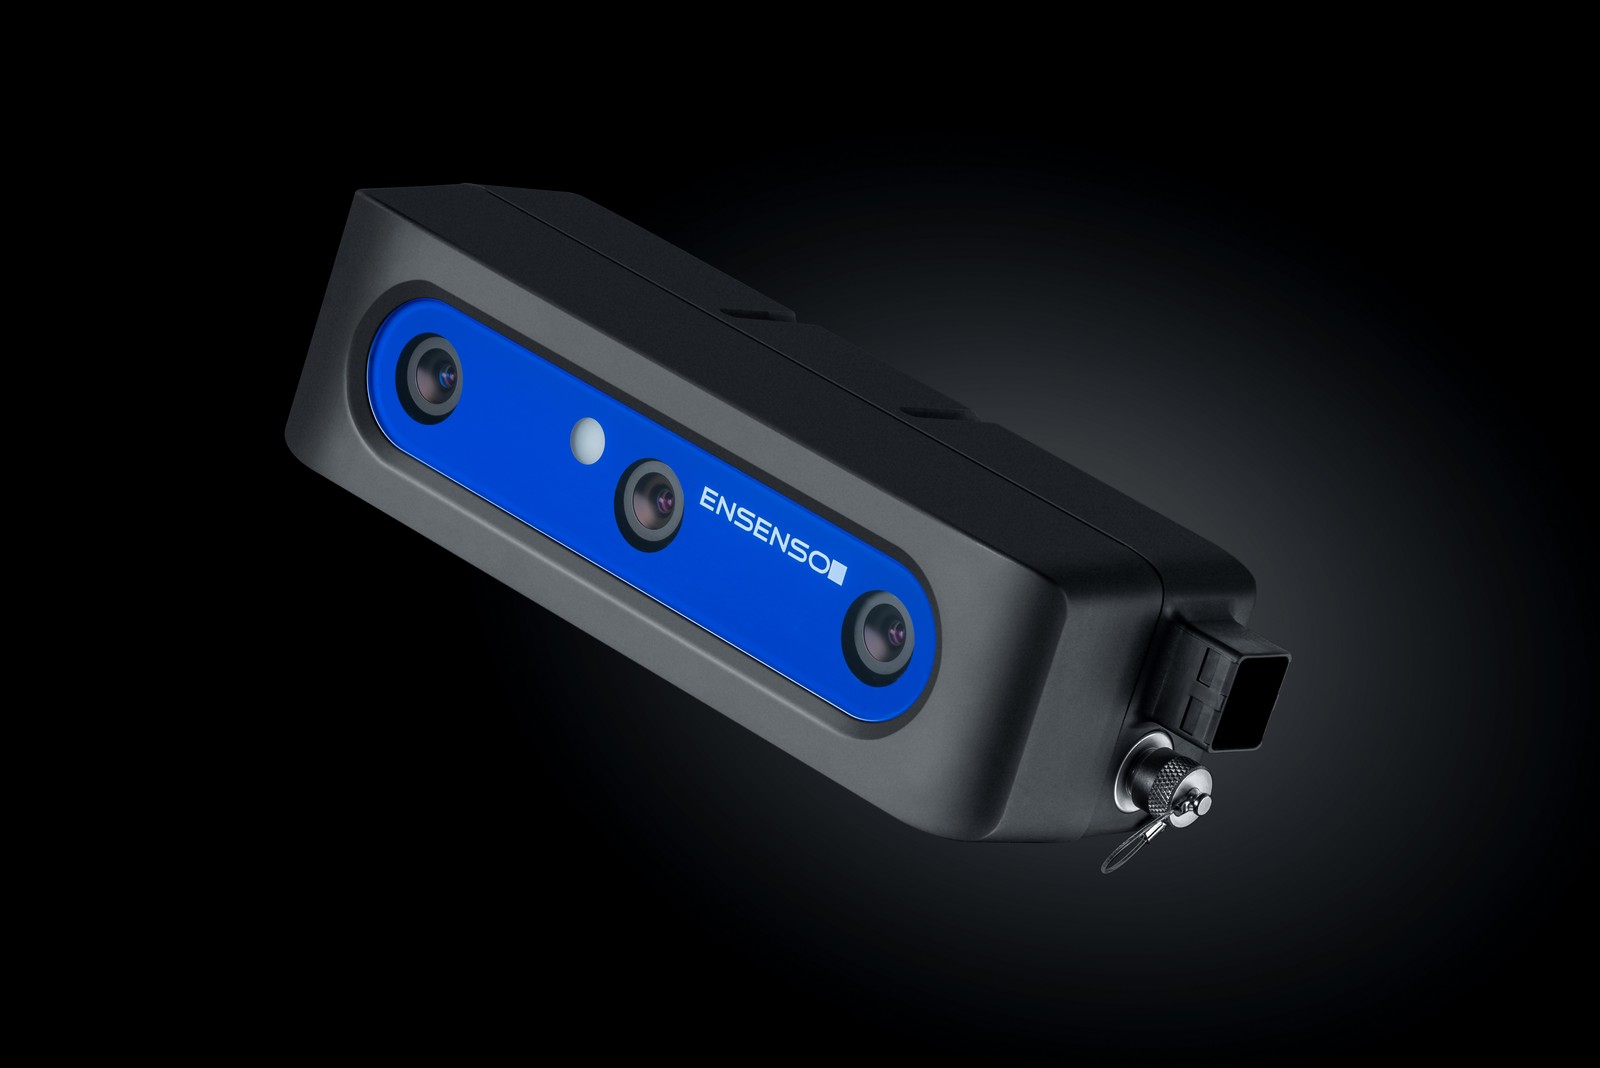 Die neuste Ensenso 3D-Kamera ist besonders leicht und ideal für kollaborative Robotik mit KI-Unterstützung in der Logistik.